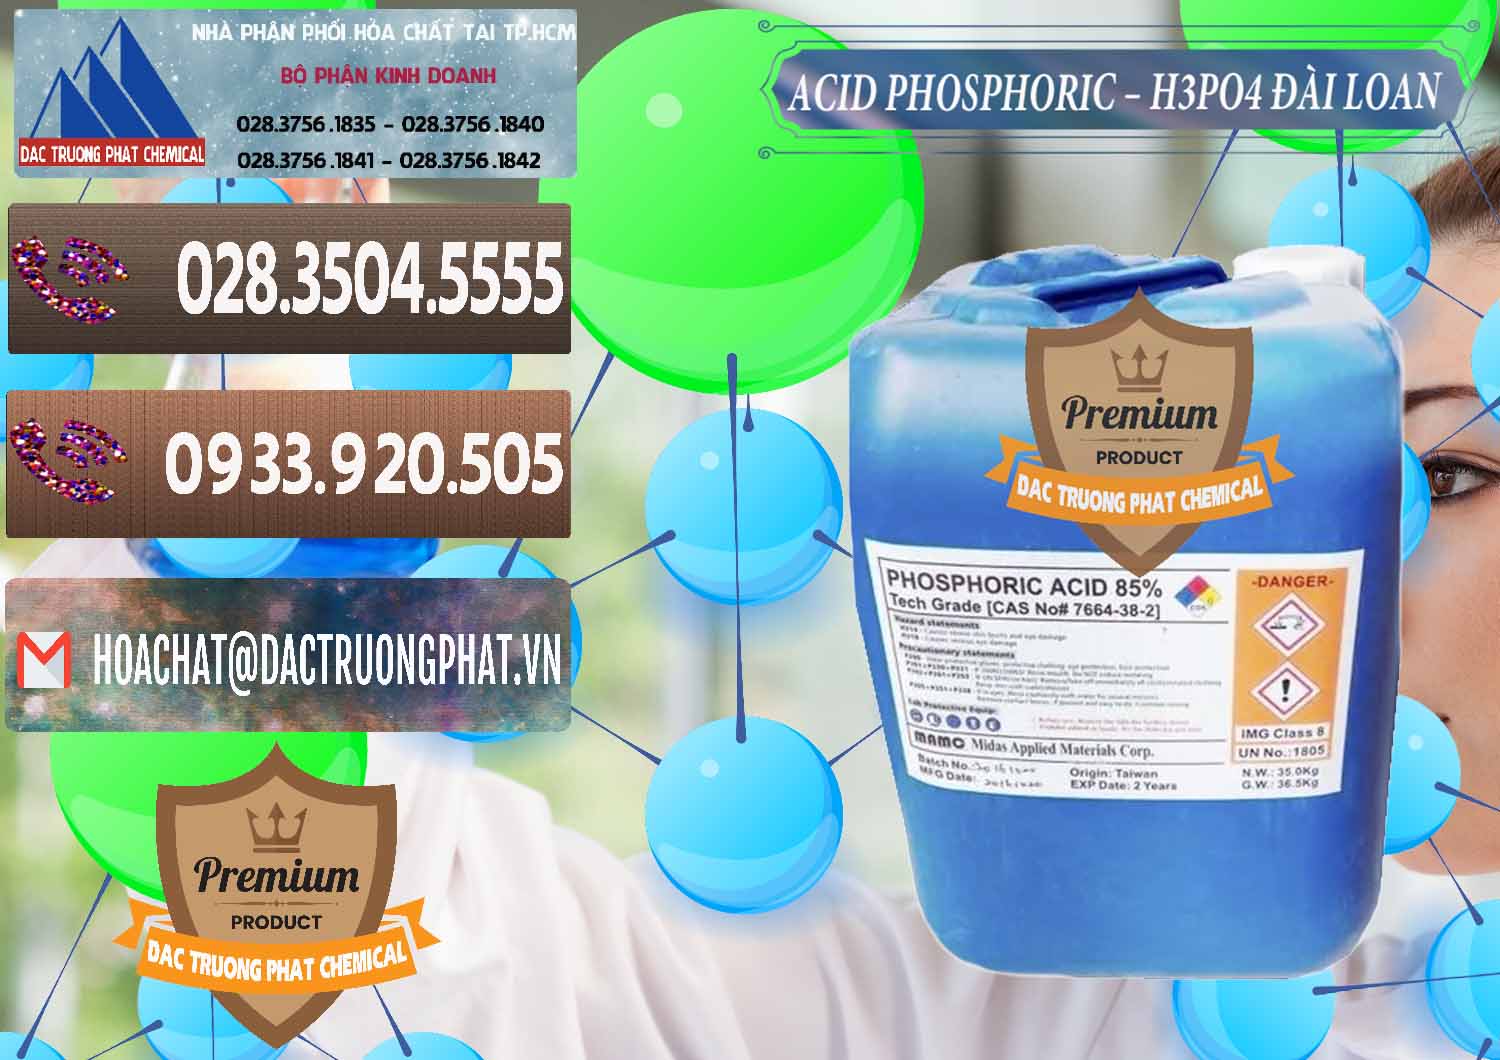 Công ty bán và cung cấp Axit Phosphoric - Acid Phosphoric H3PO4 85% Đài Loan Taiwan - 0351 - Cty chuyên nhập khẩu & cung cấp hóa chất tại TP.HCM - hoachatviet.net